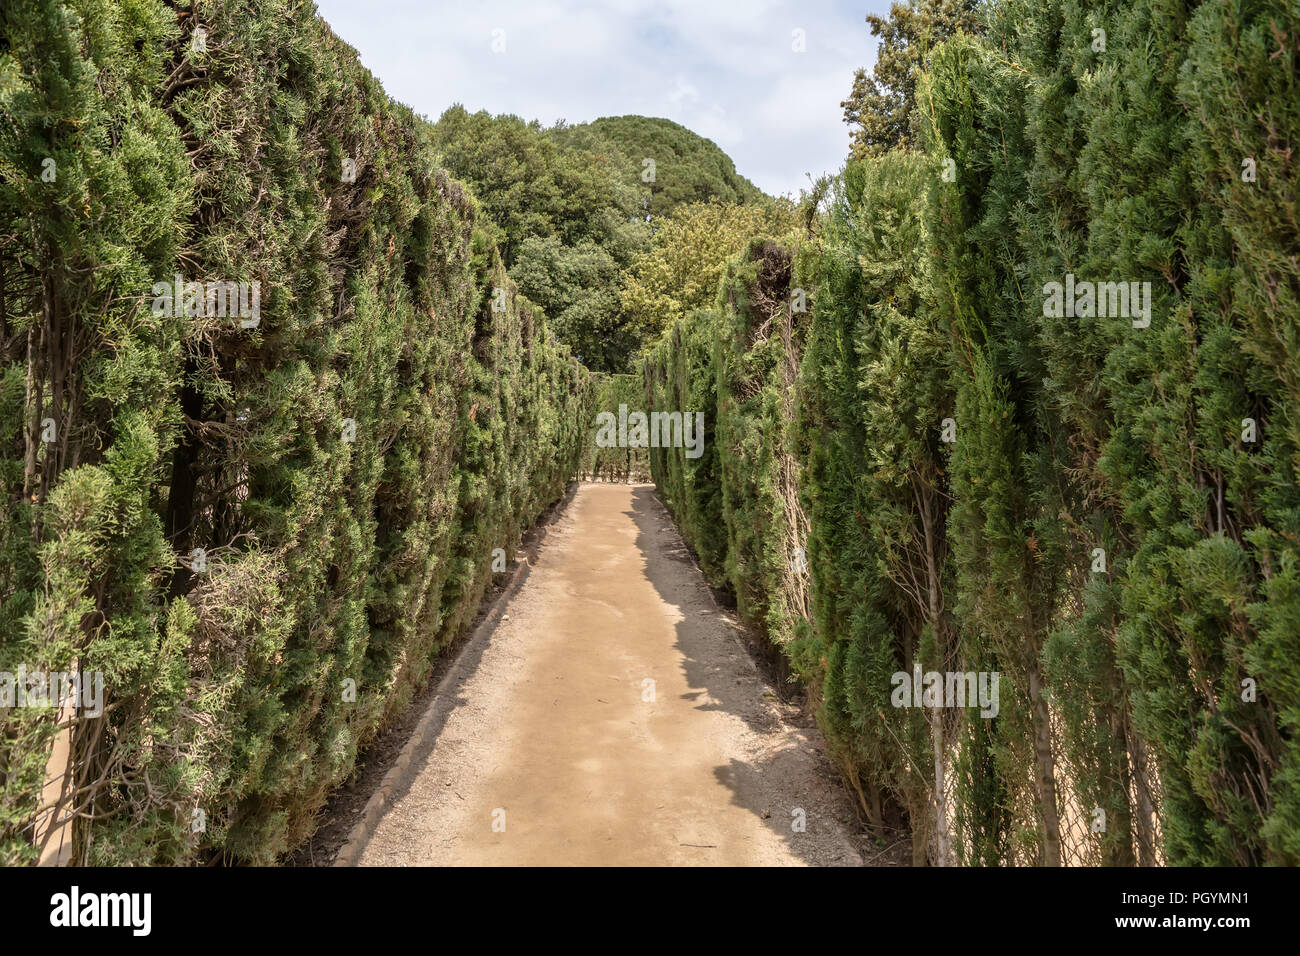 Chemin à travers parées de cyprès de hedge maze dans Labyrinth Park de Horta. Le labyrinthe a une forme trapézoïdale similaire au Minotaure labyrinthe. Banque D'Images